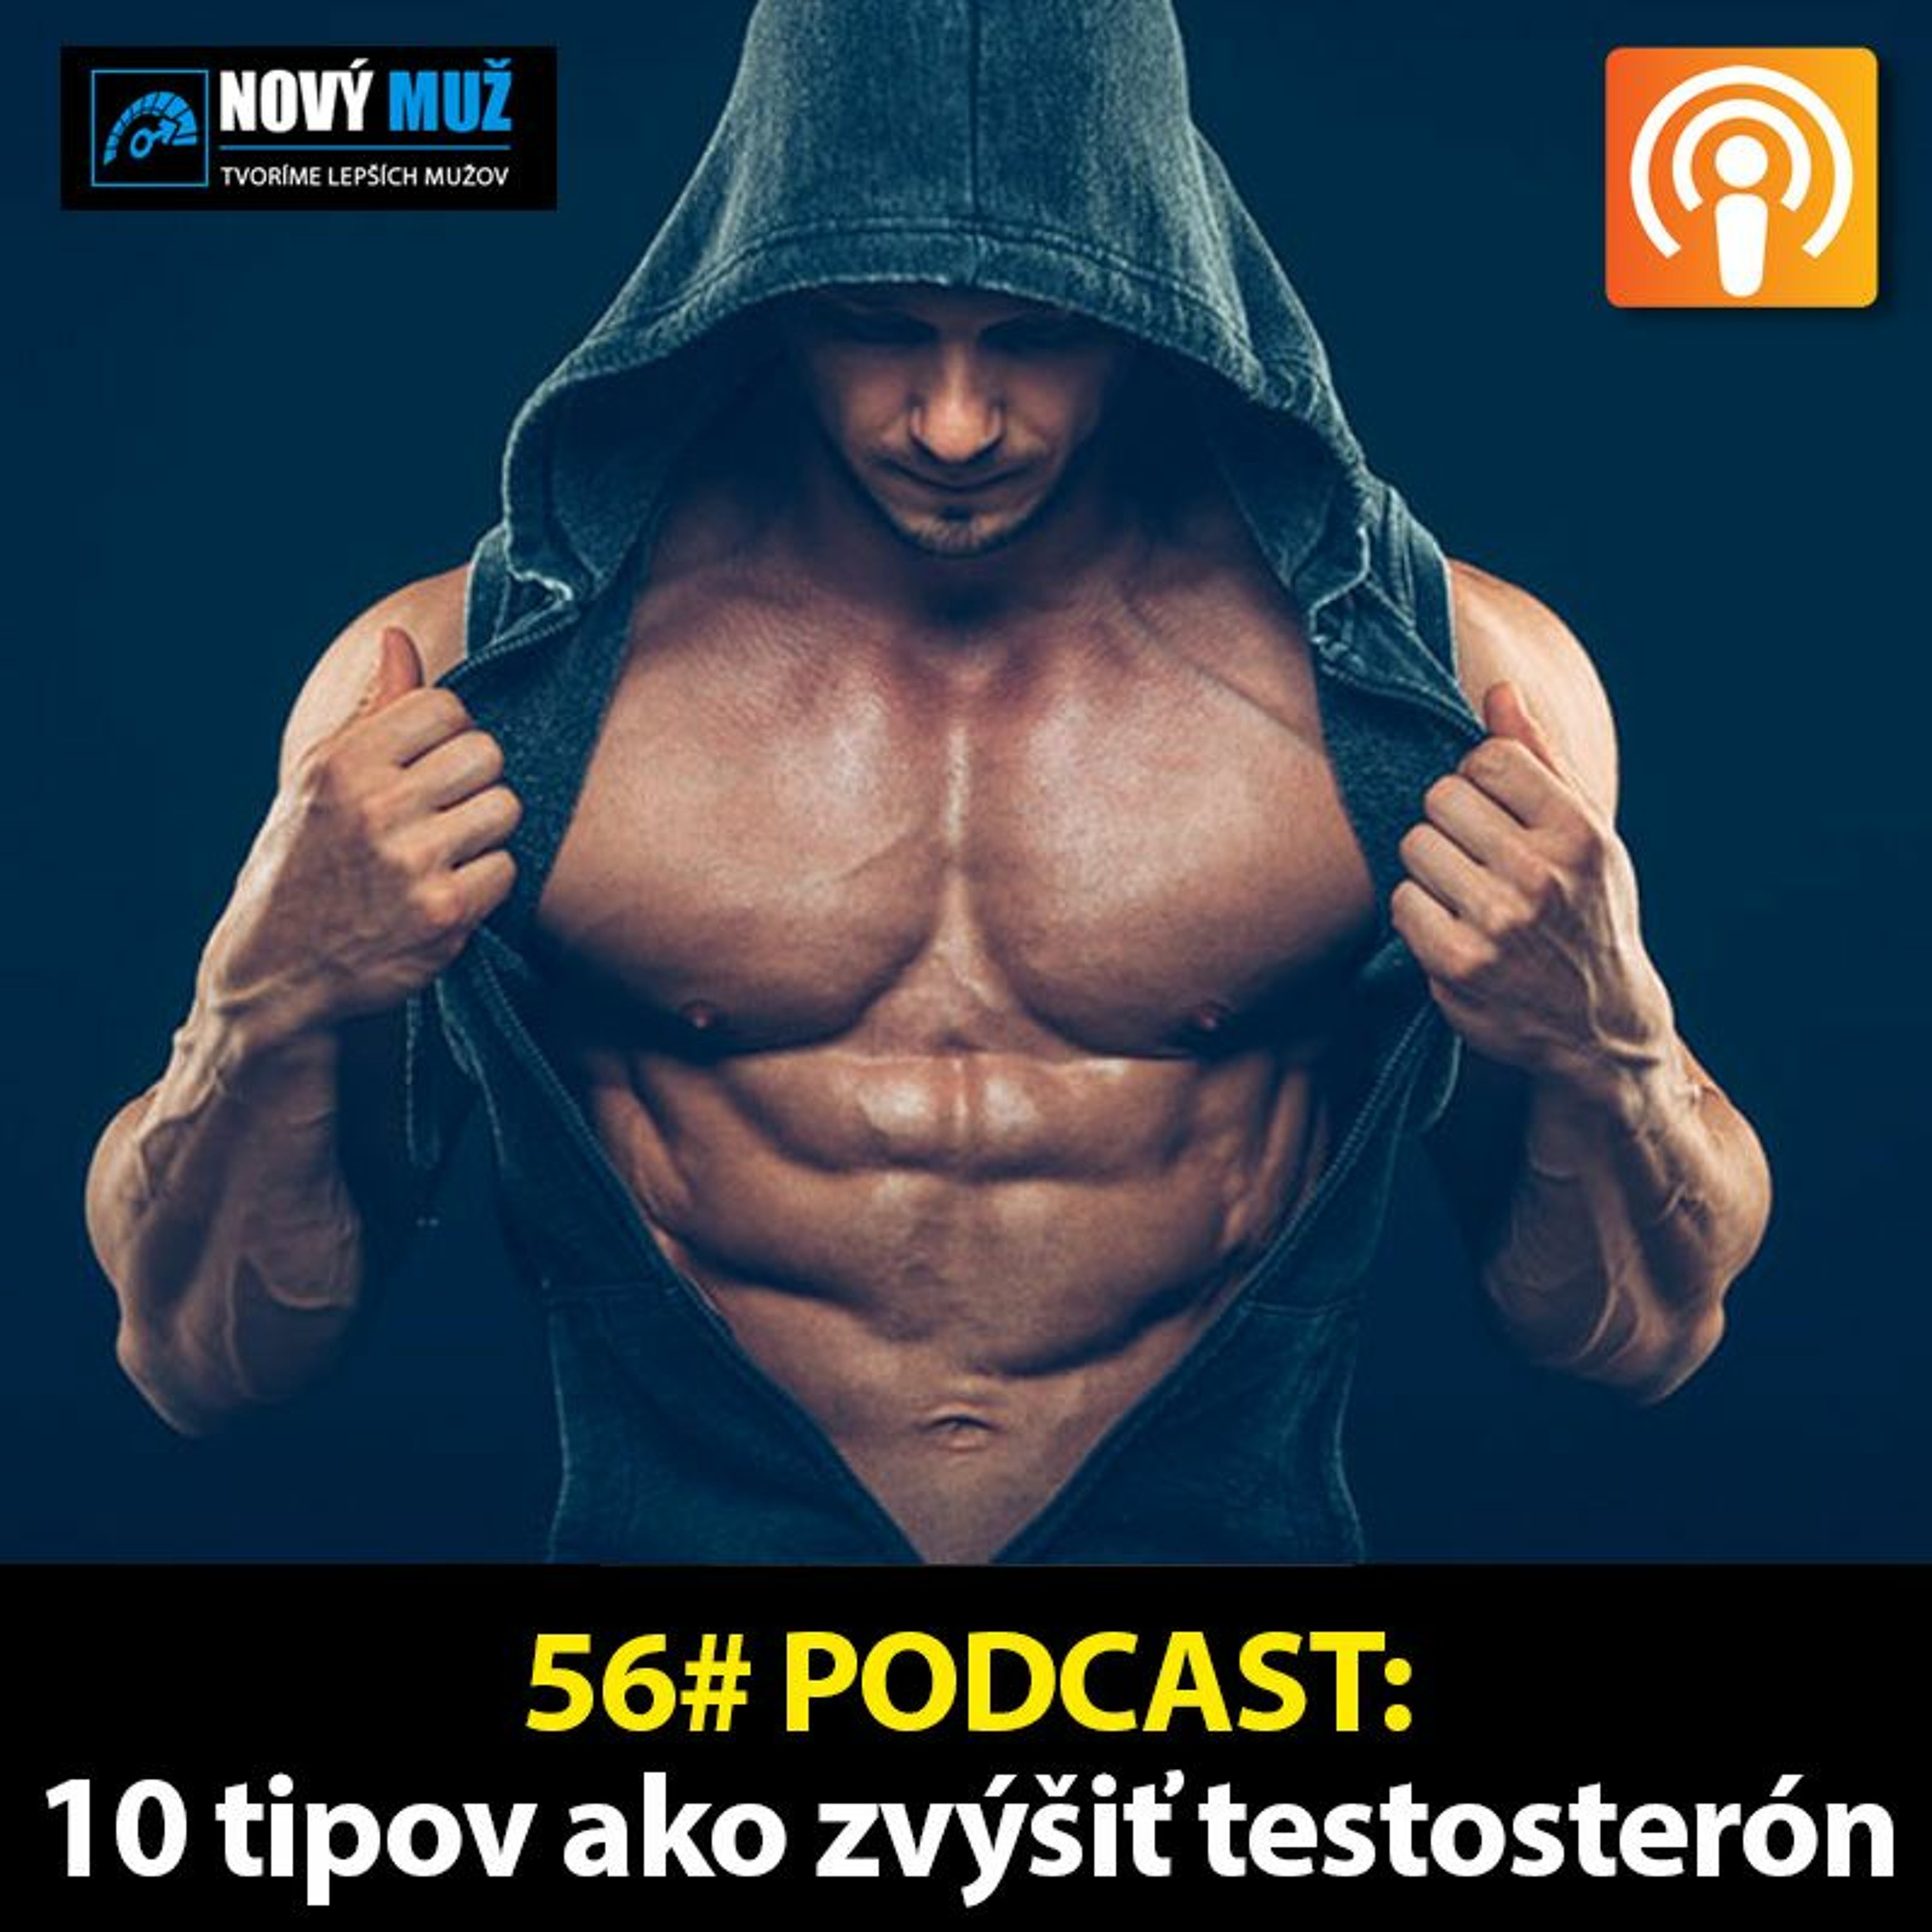 56#PODCAST - 10 tipov ako zvýšiť testosterón